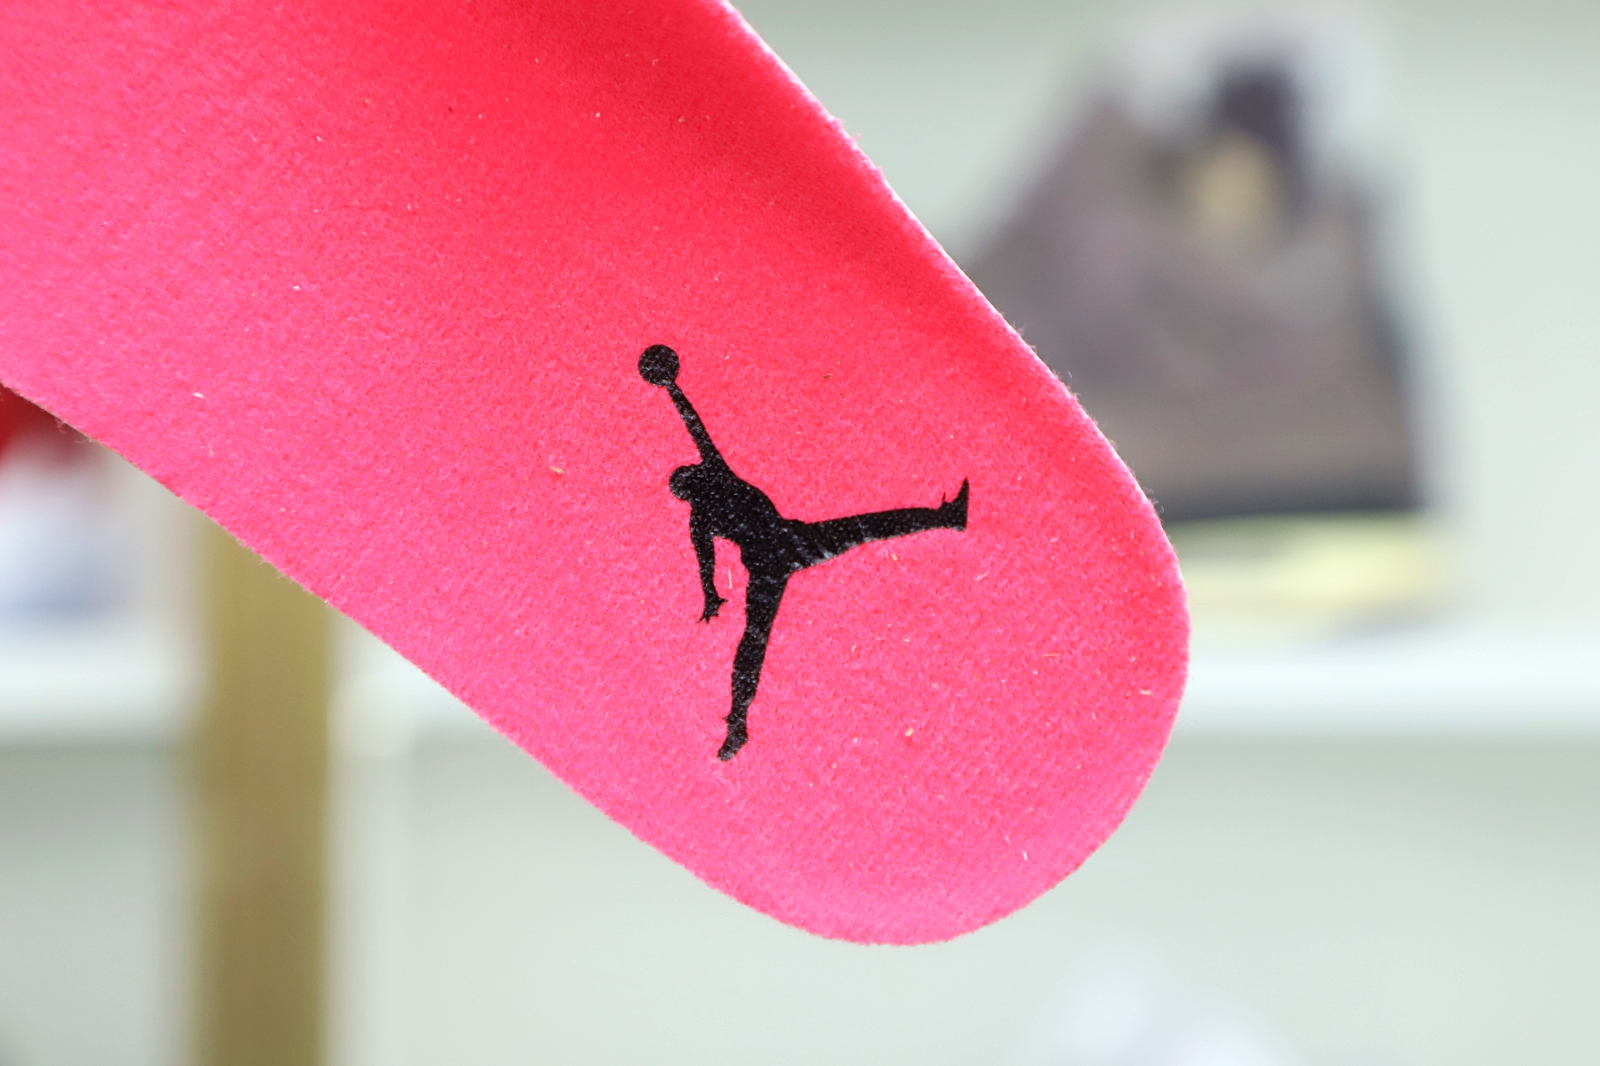 Jordan Air Jordan 11 pink snakeskin